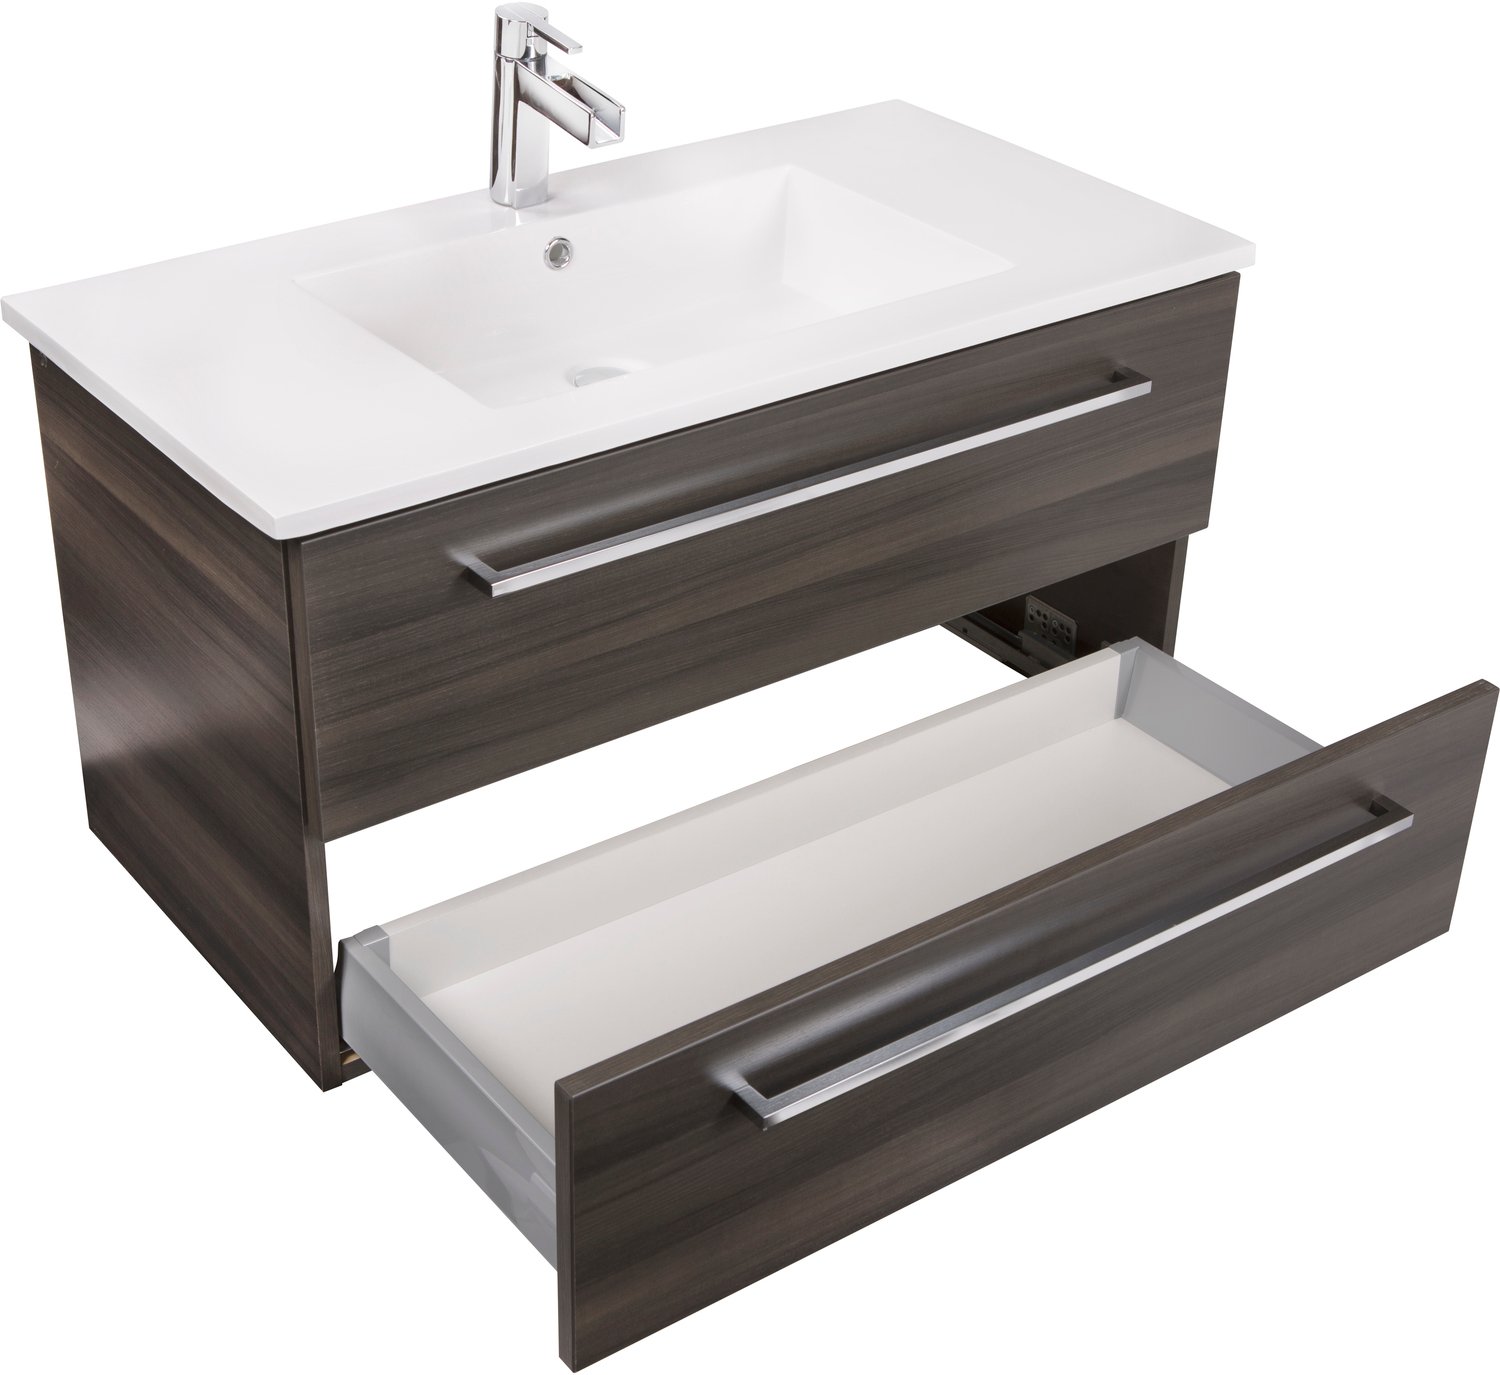 vanity and storage cabinet set Cutler Kitchen and Bath Bathroom Vanities Dark, White Sink